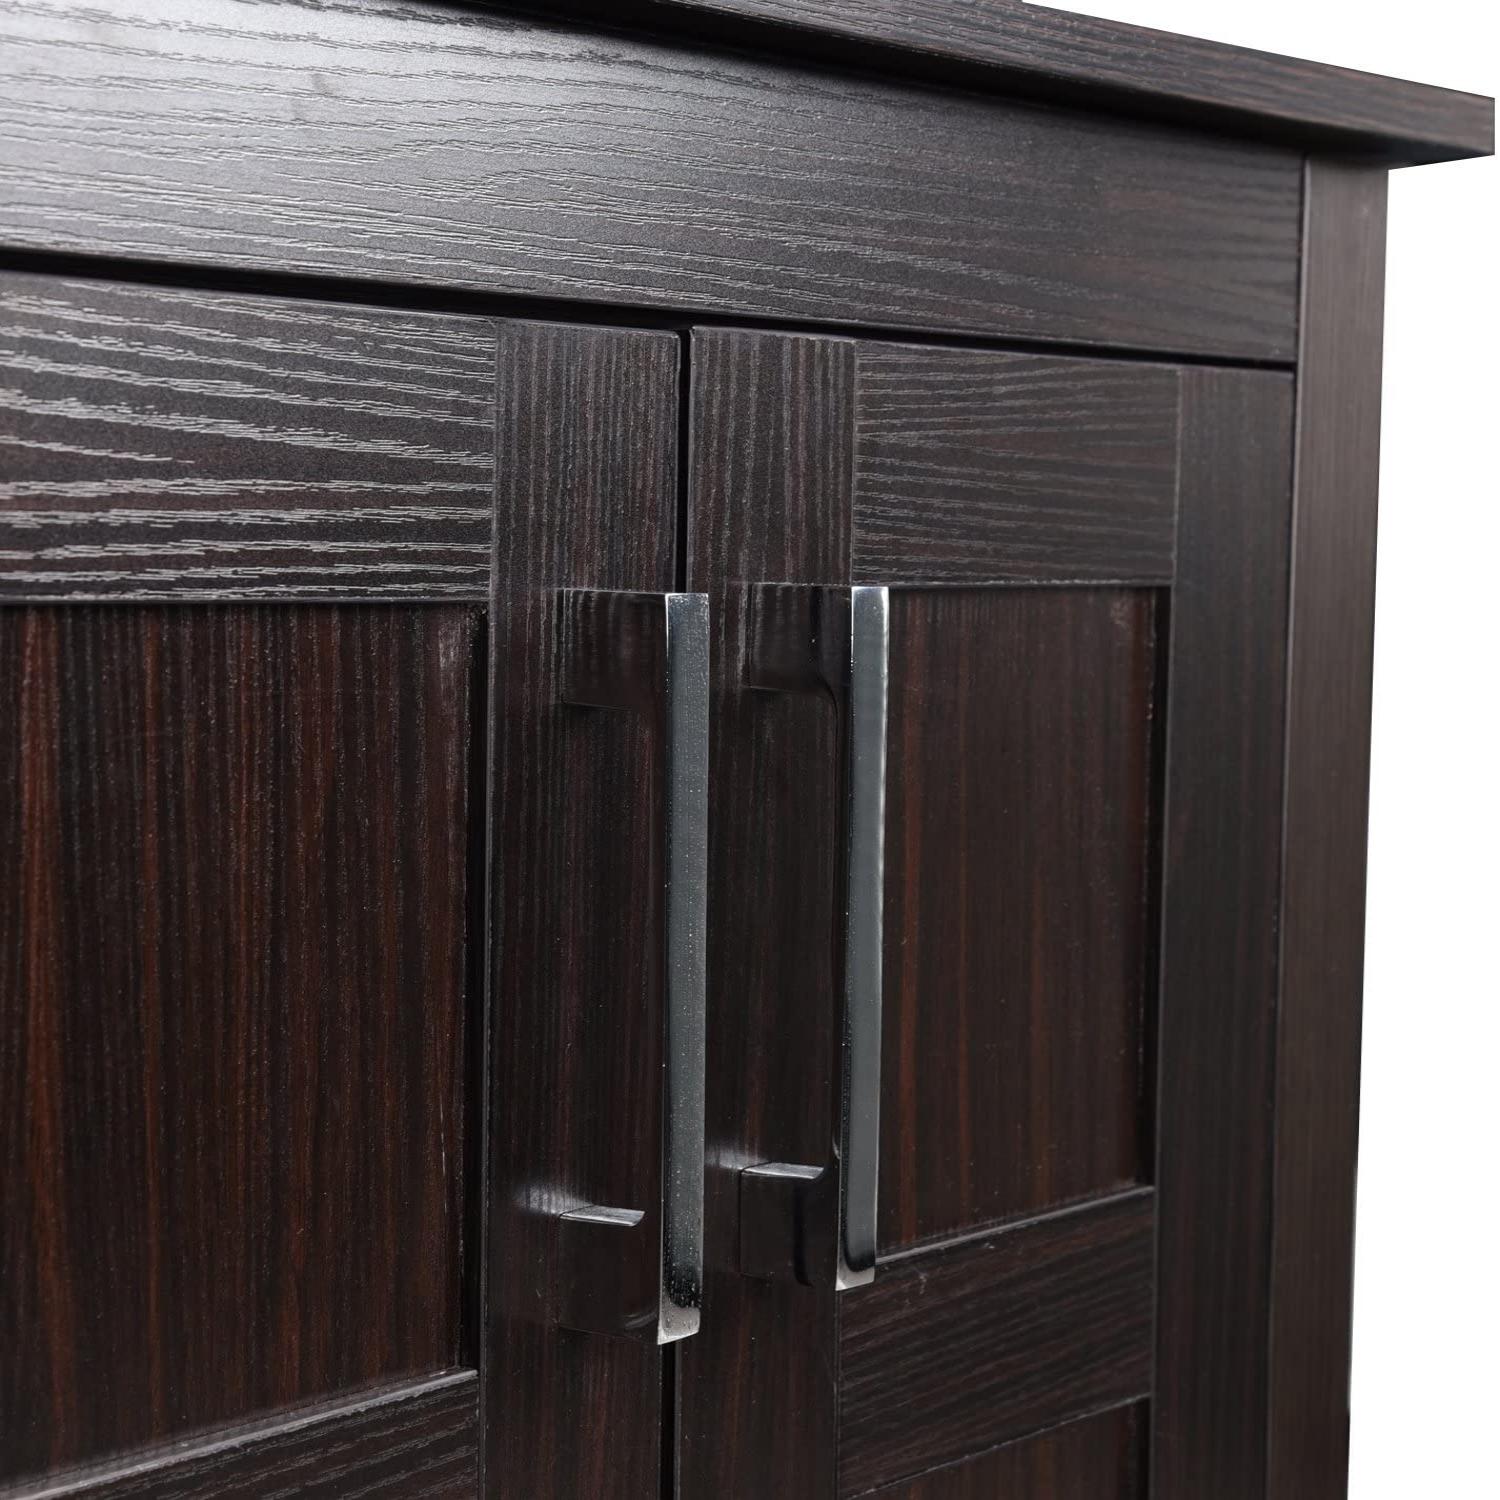 Details of Elecwish 24''Black & Brown Wood Bathroom Vanity HW1120 cabinet door